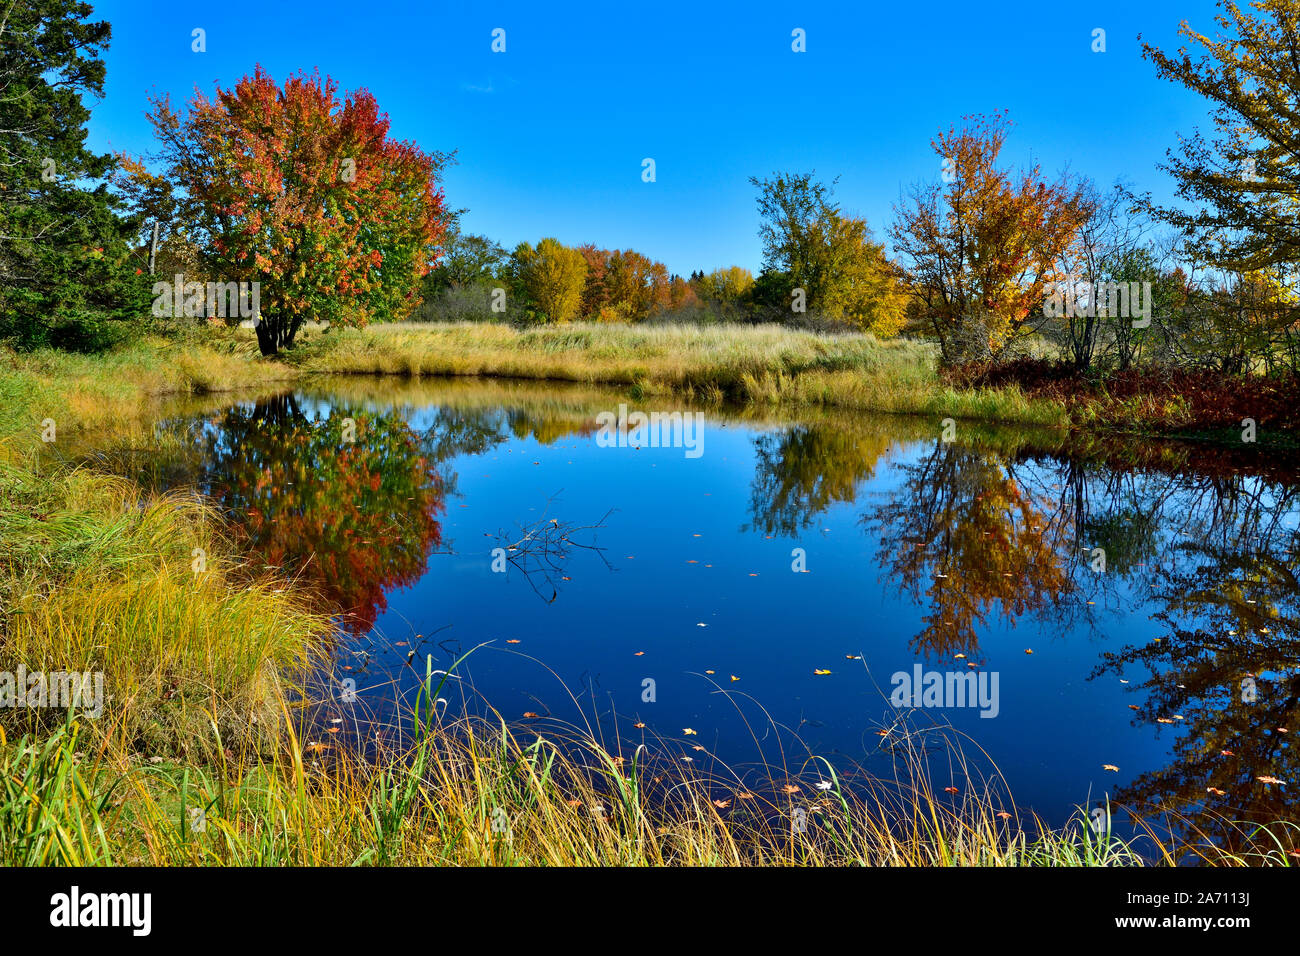 Eine horizontale Landschaft Bild eines Ahorn Baum und seine Blätter die Farben des Herbstes spiegeln in einem blauen Teich Wasser im ländlichen New Brunswic Stockfoto